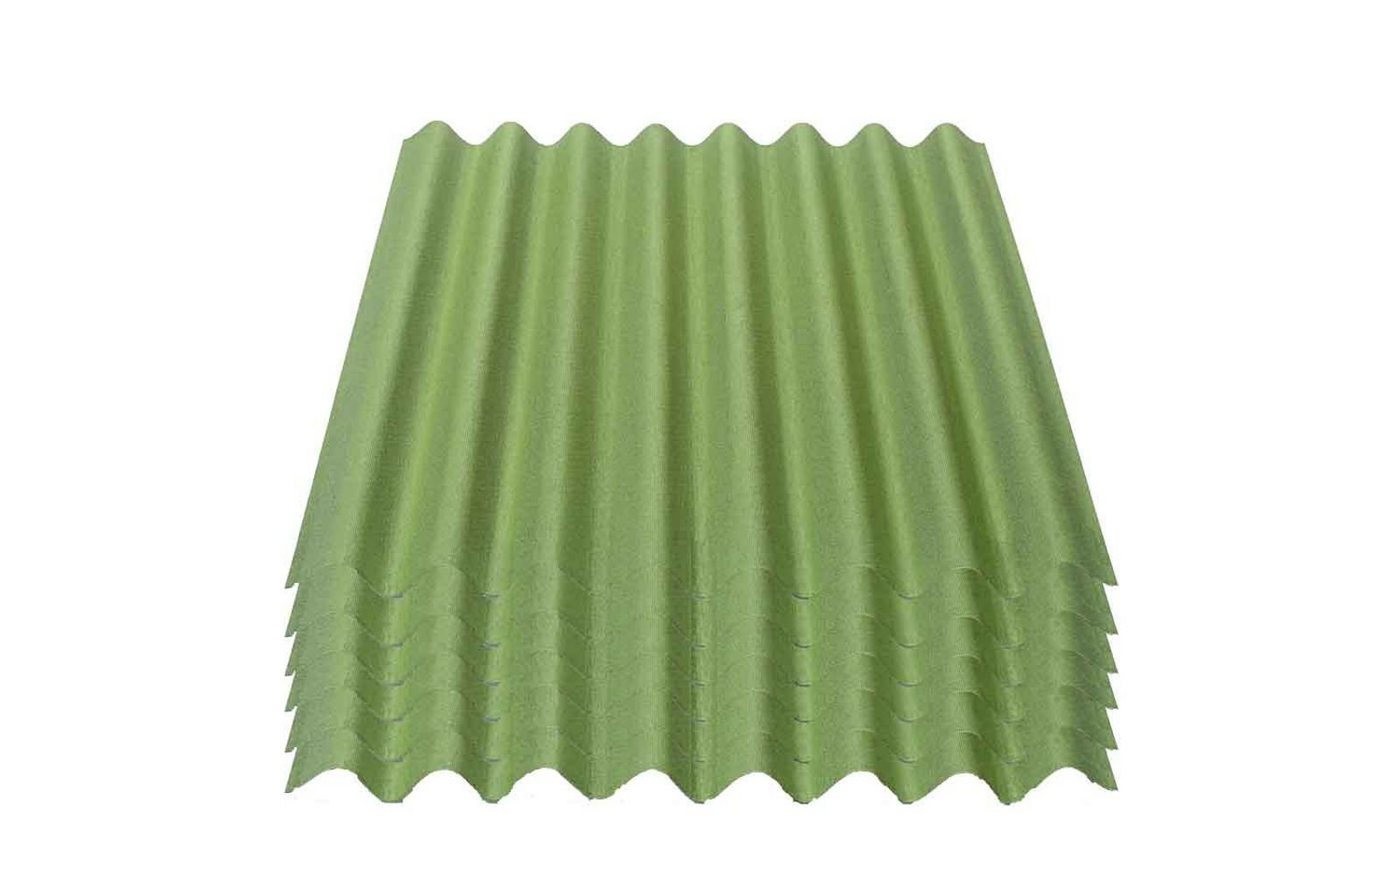 Onduline Dachpappe Onduline Easyline Dachplatte Wandplatte Bitumenwellplatten Wellplatte 6x0,76m² - grün, wellig, 4.56 m² pro Paket, (6-St) von Onduline